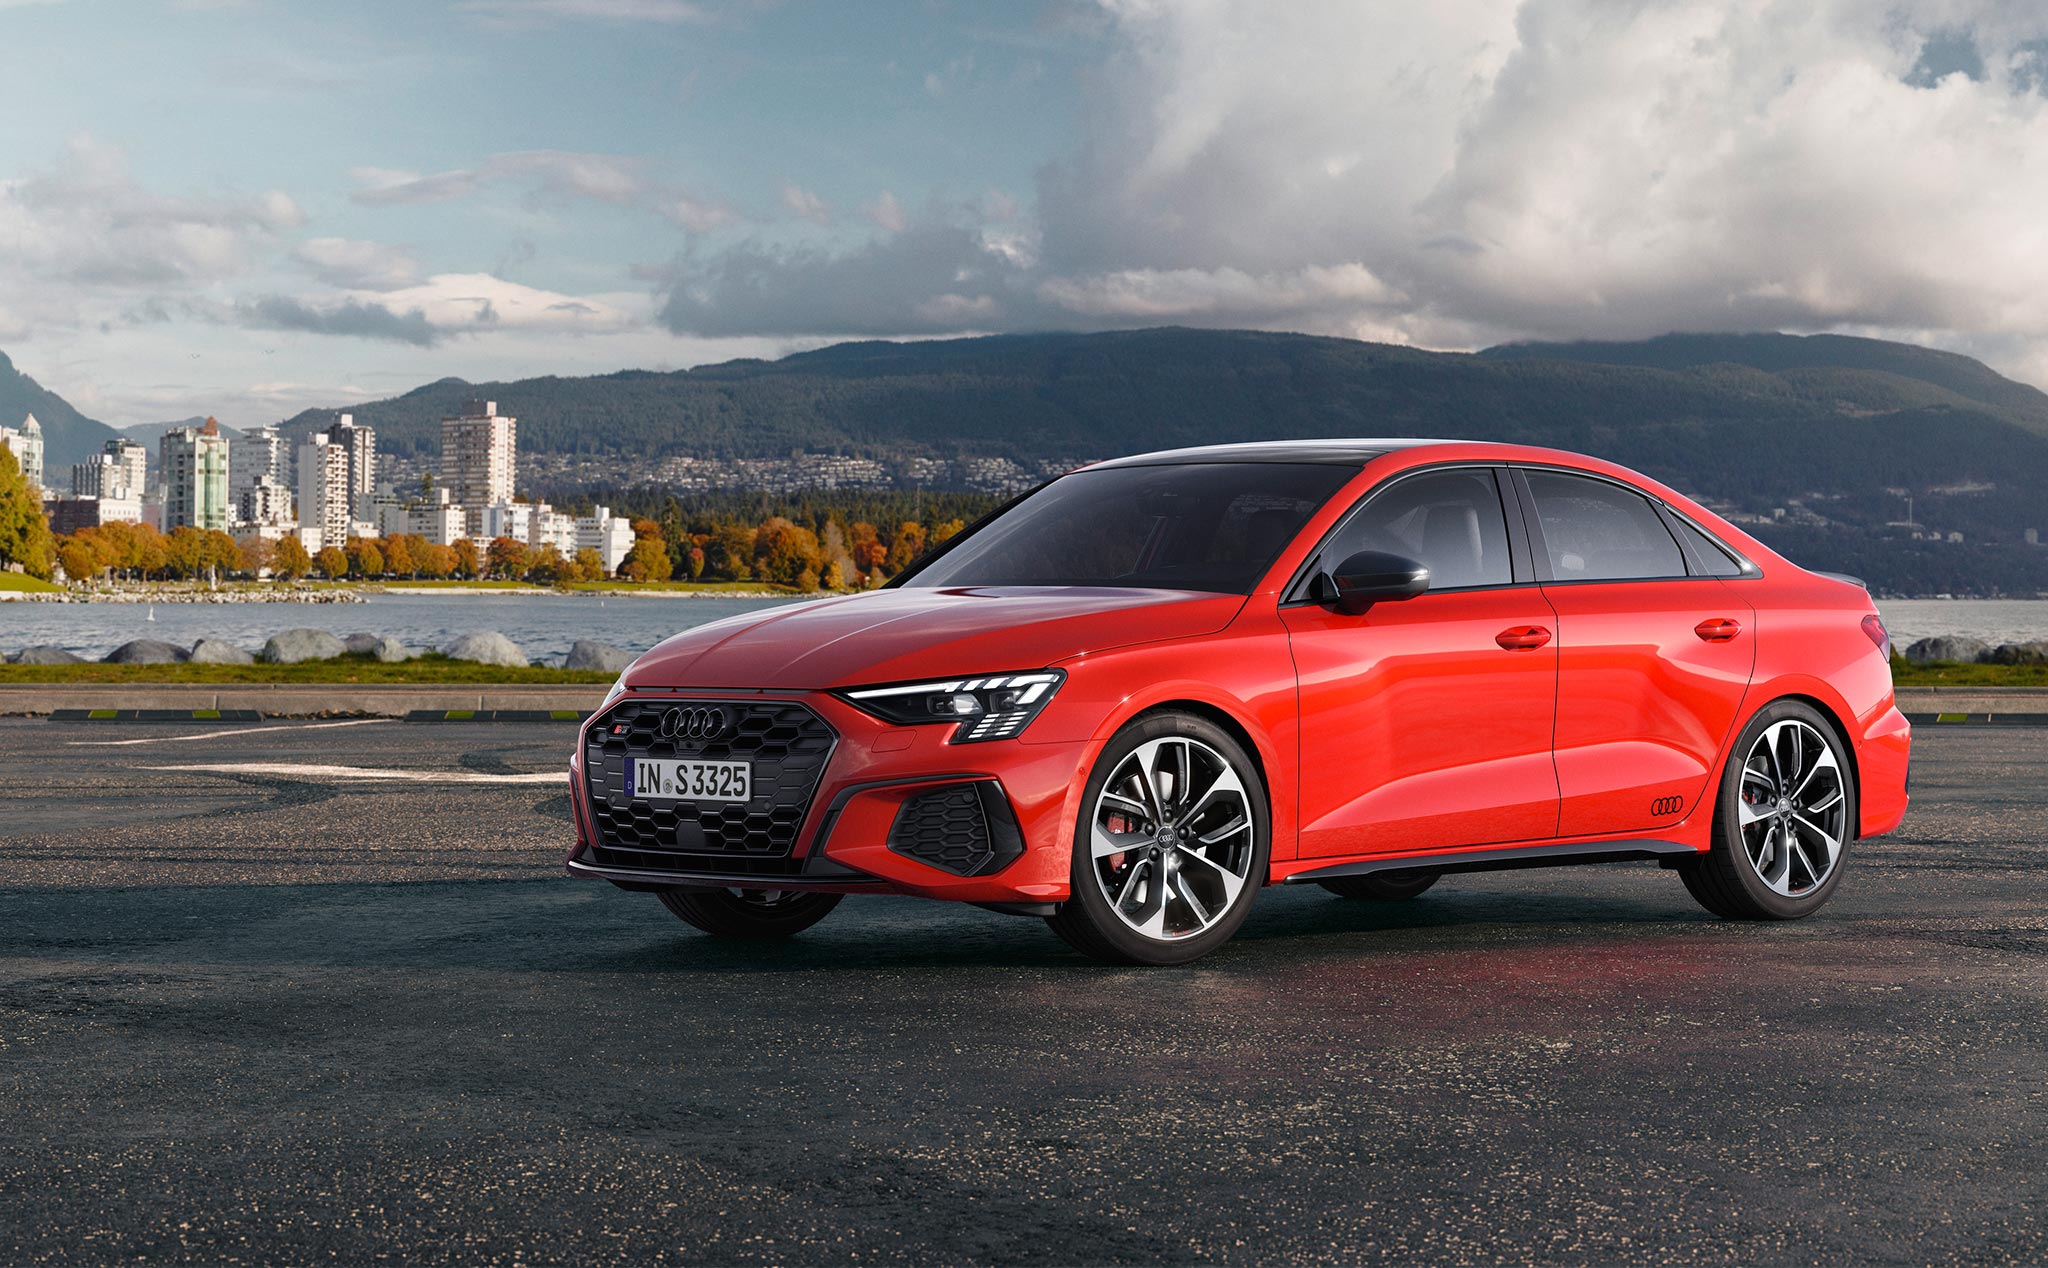 Audi S3 thế hệ thứ 4 ra mắt, mẫu xe nhỏ gọn hiệu năng cao 310 mã lực